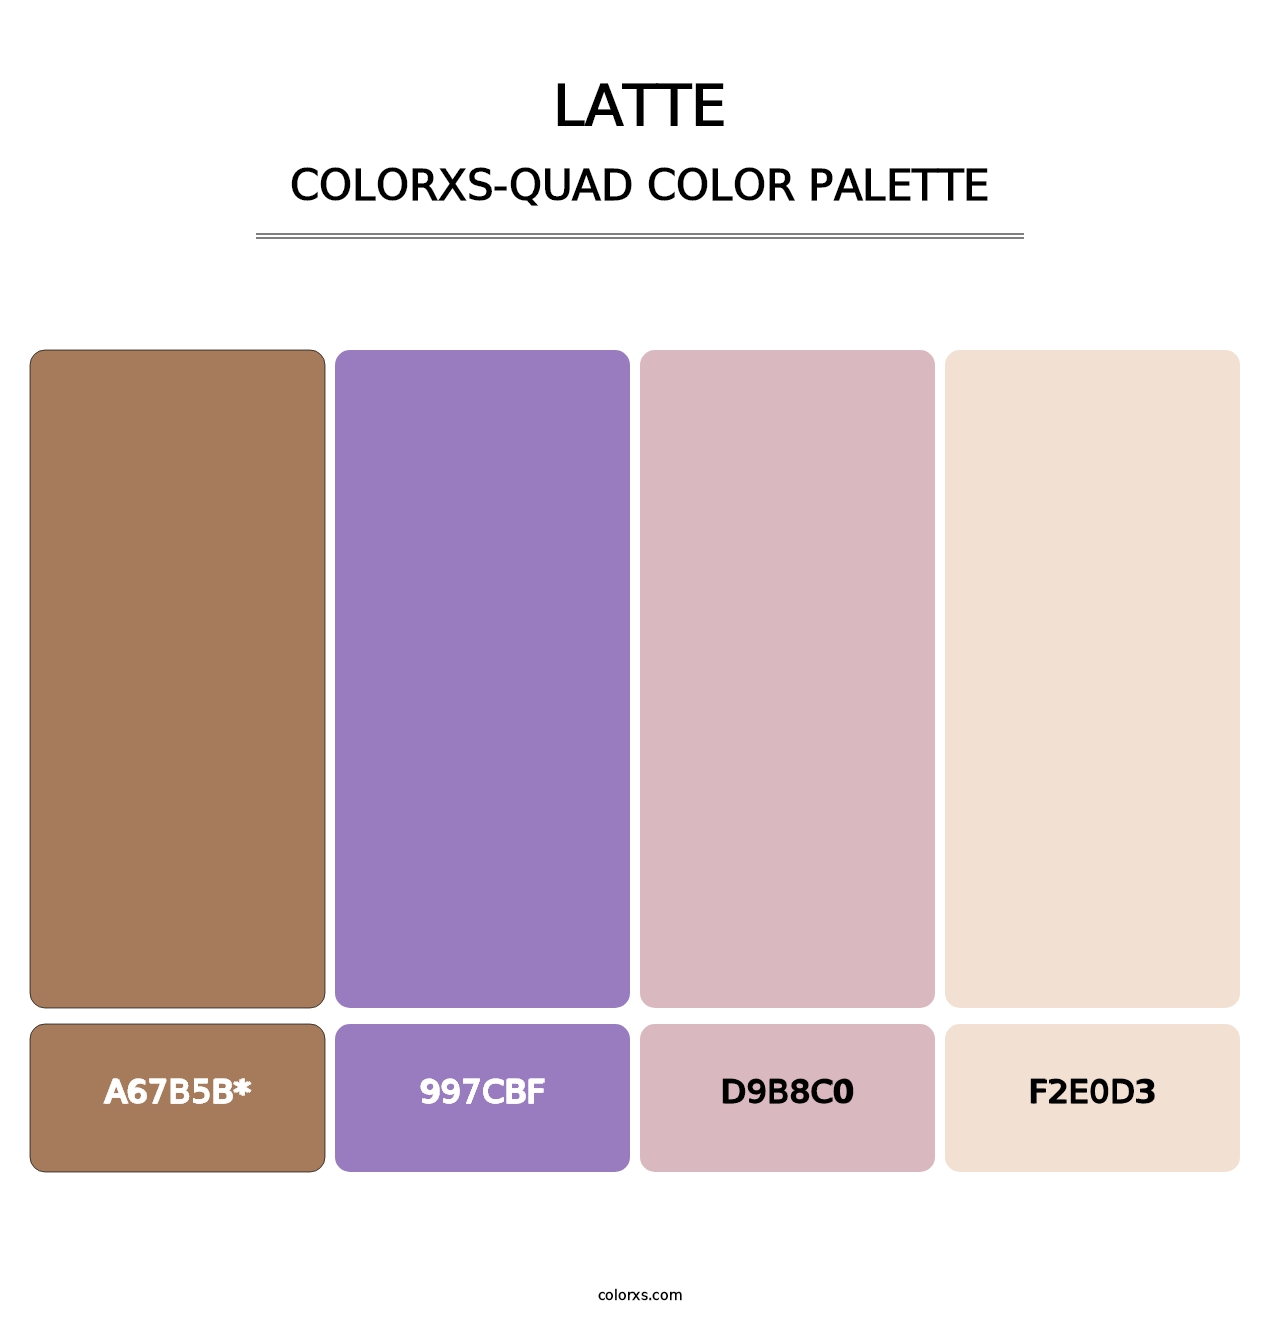 Latte - Colorxs Quad Palette